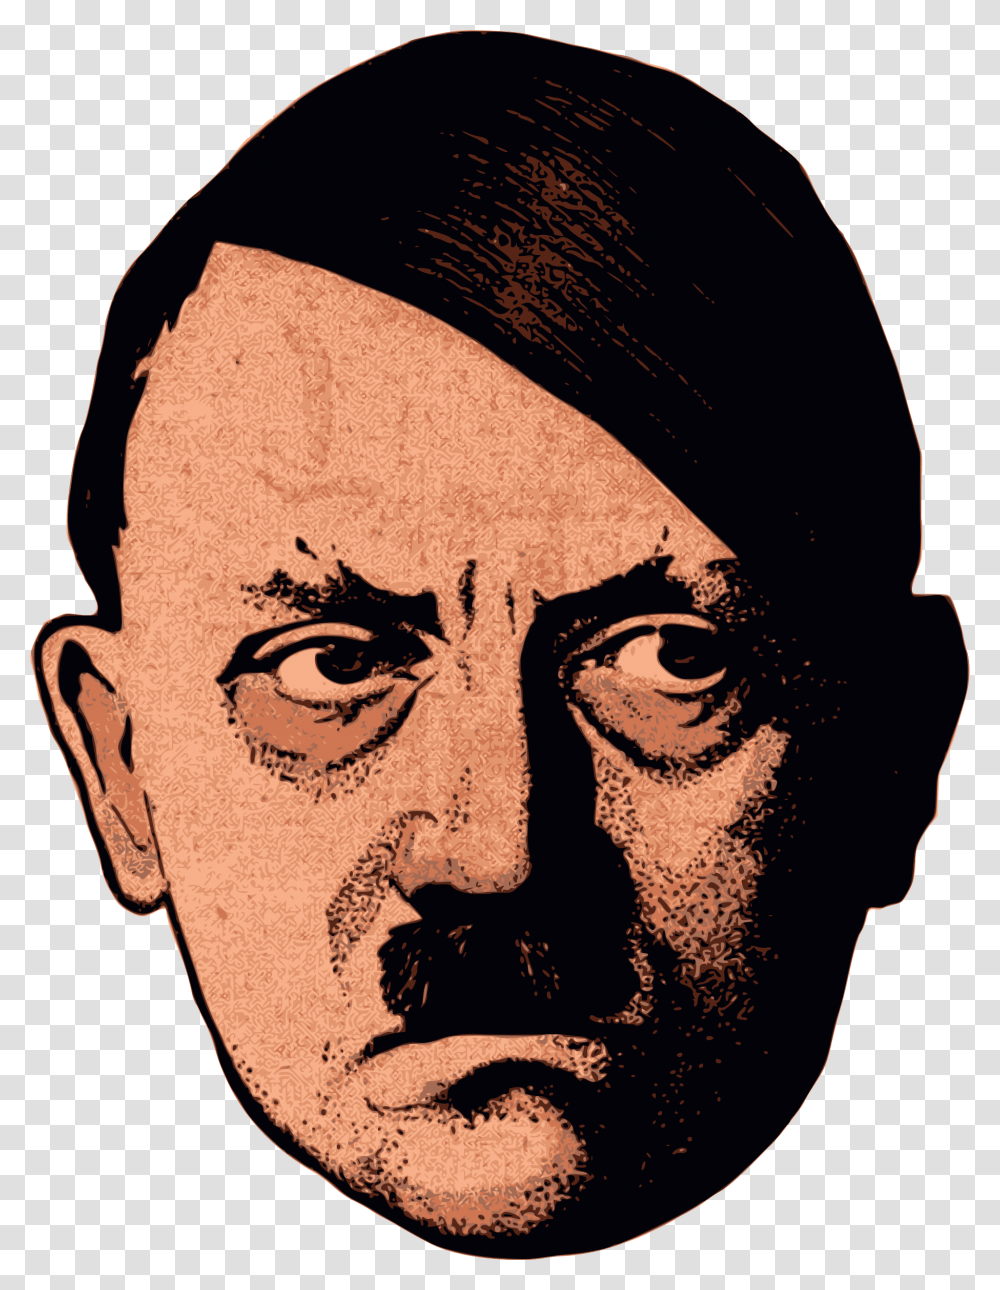 Adolf Hitler Hitler Face No Background, Person, Skin, Head Transparent Png